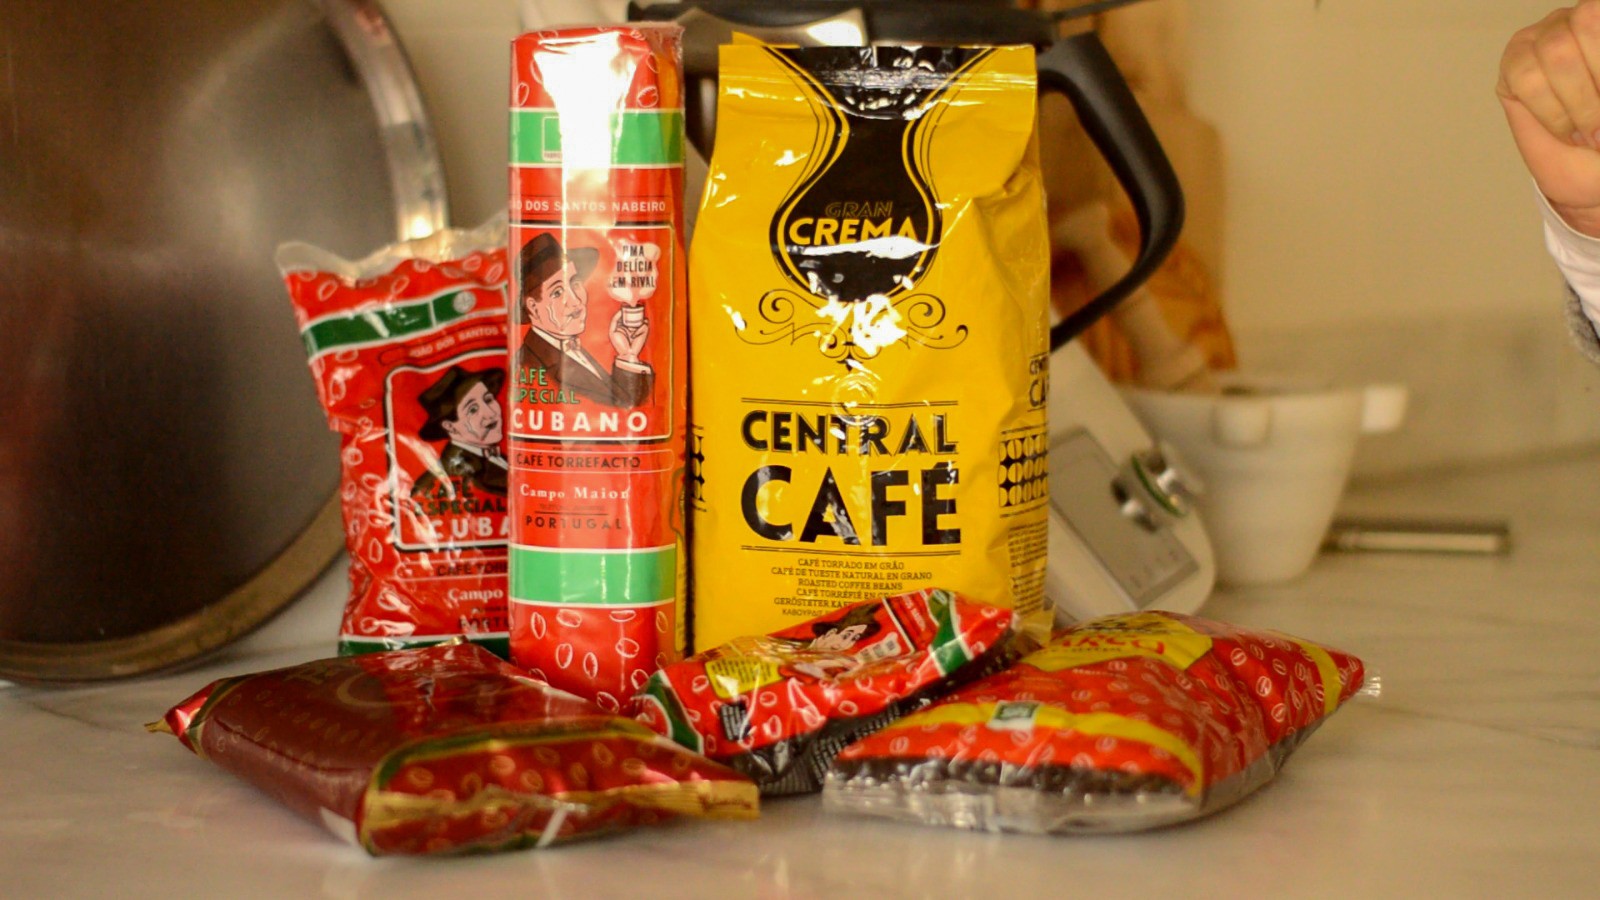 Cafe Central Gran Crema Grano 1kg